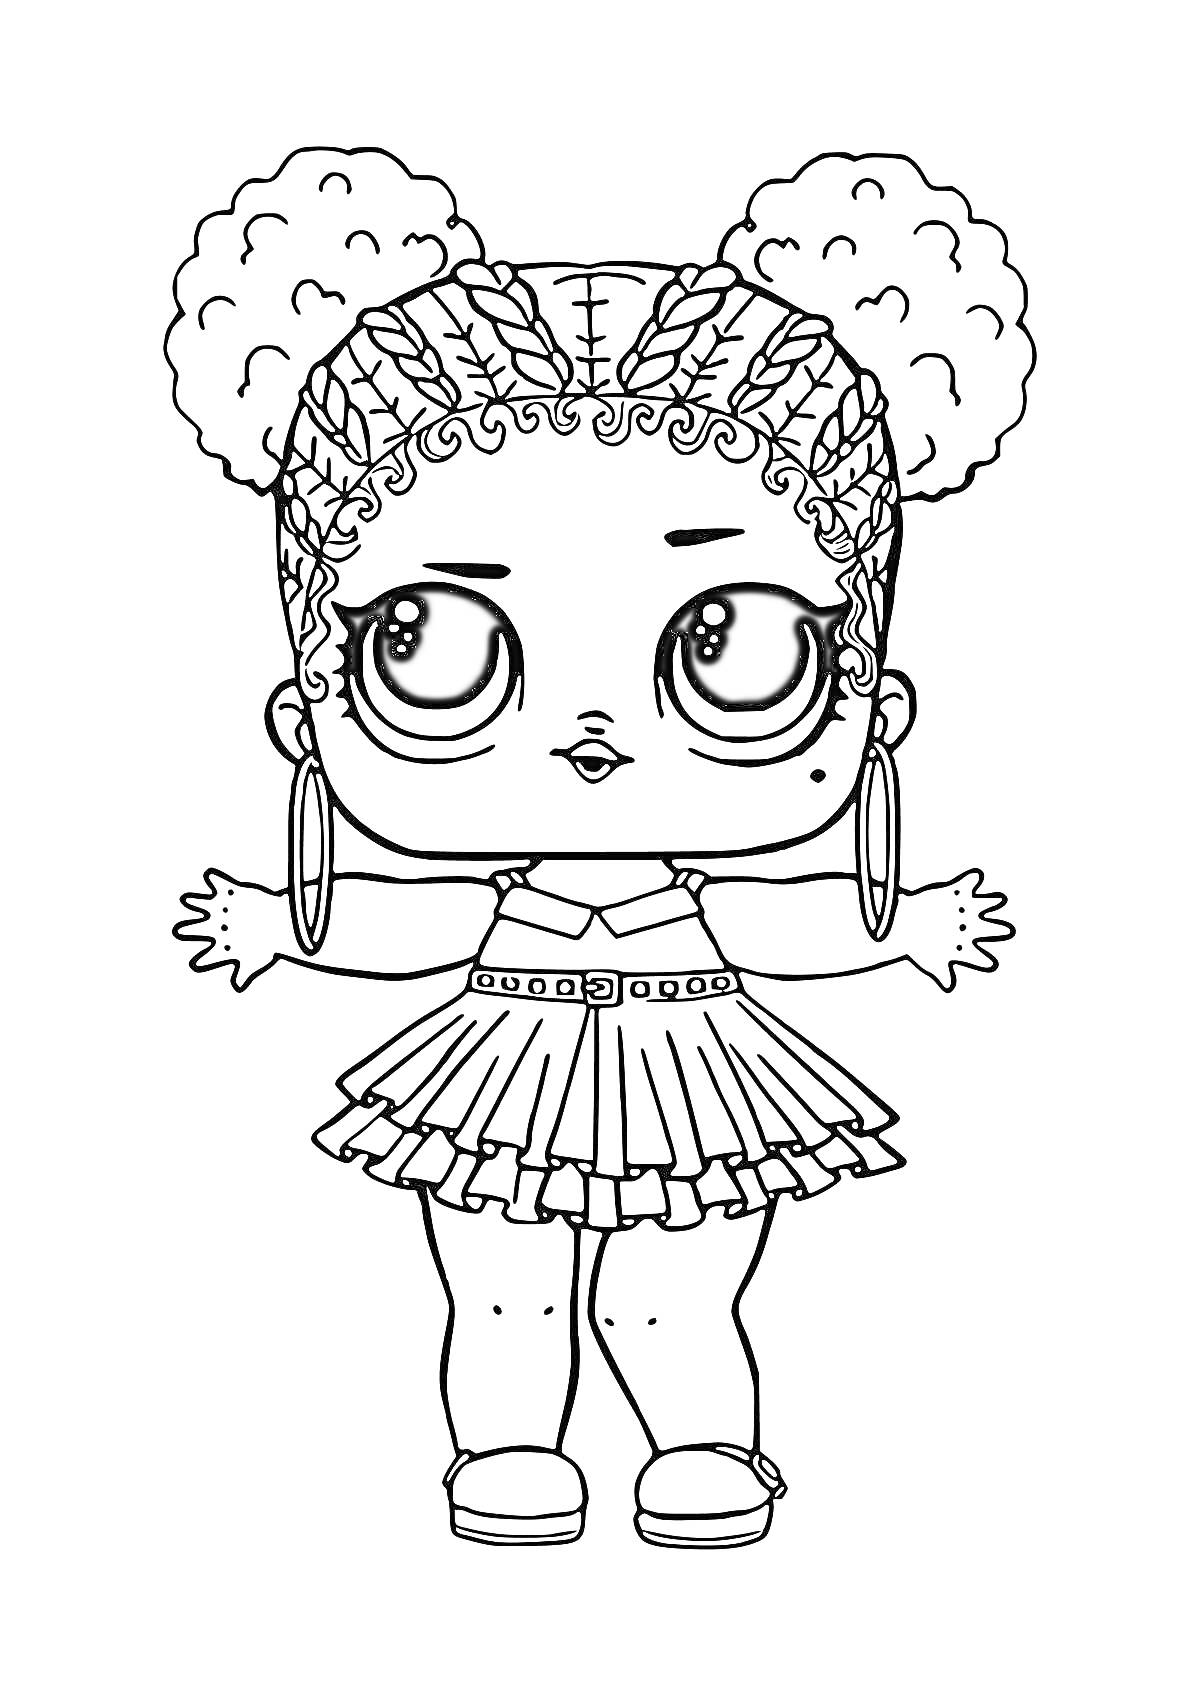 Раскраска Кукла ЛОЛ с двумя кудрявыми пучками, серёжками-кольцами, большим носом, в платье с ремнём и ботинках с носками